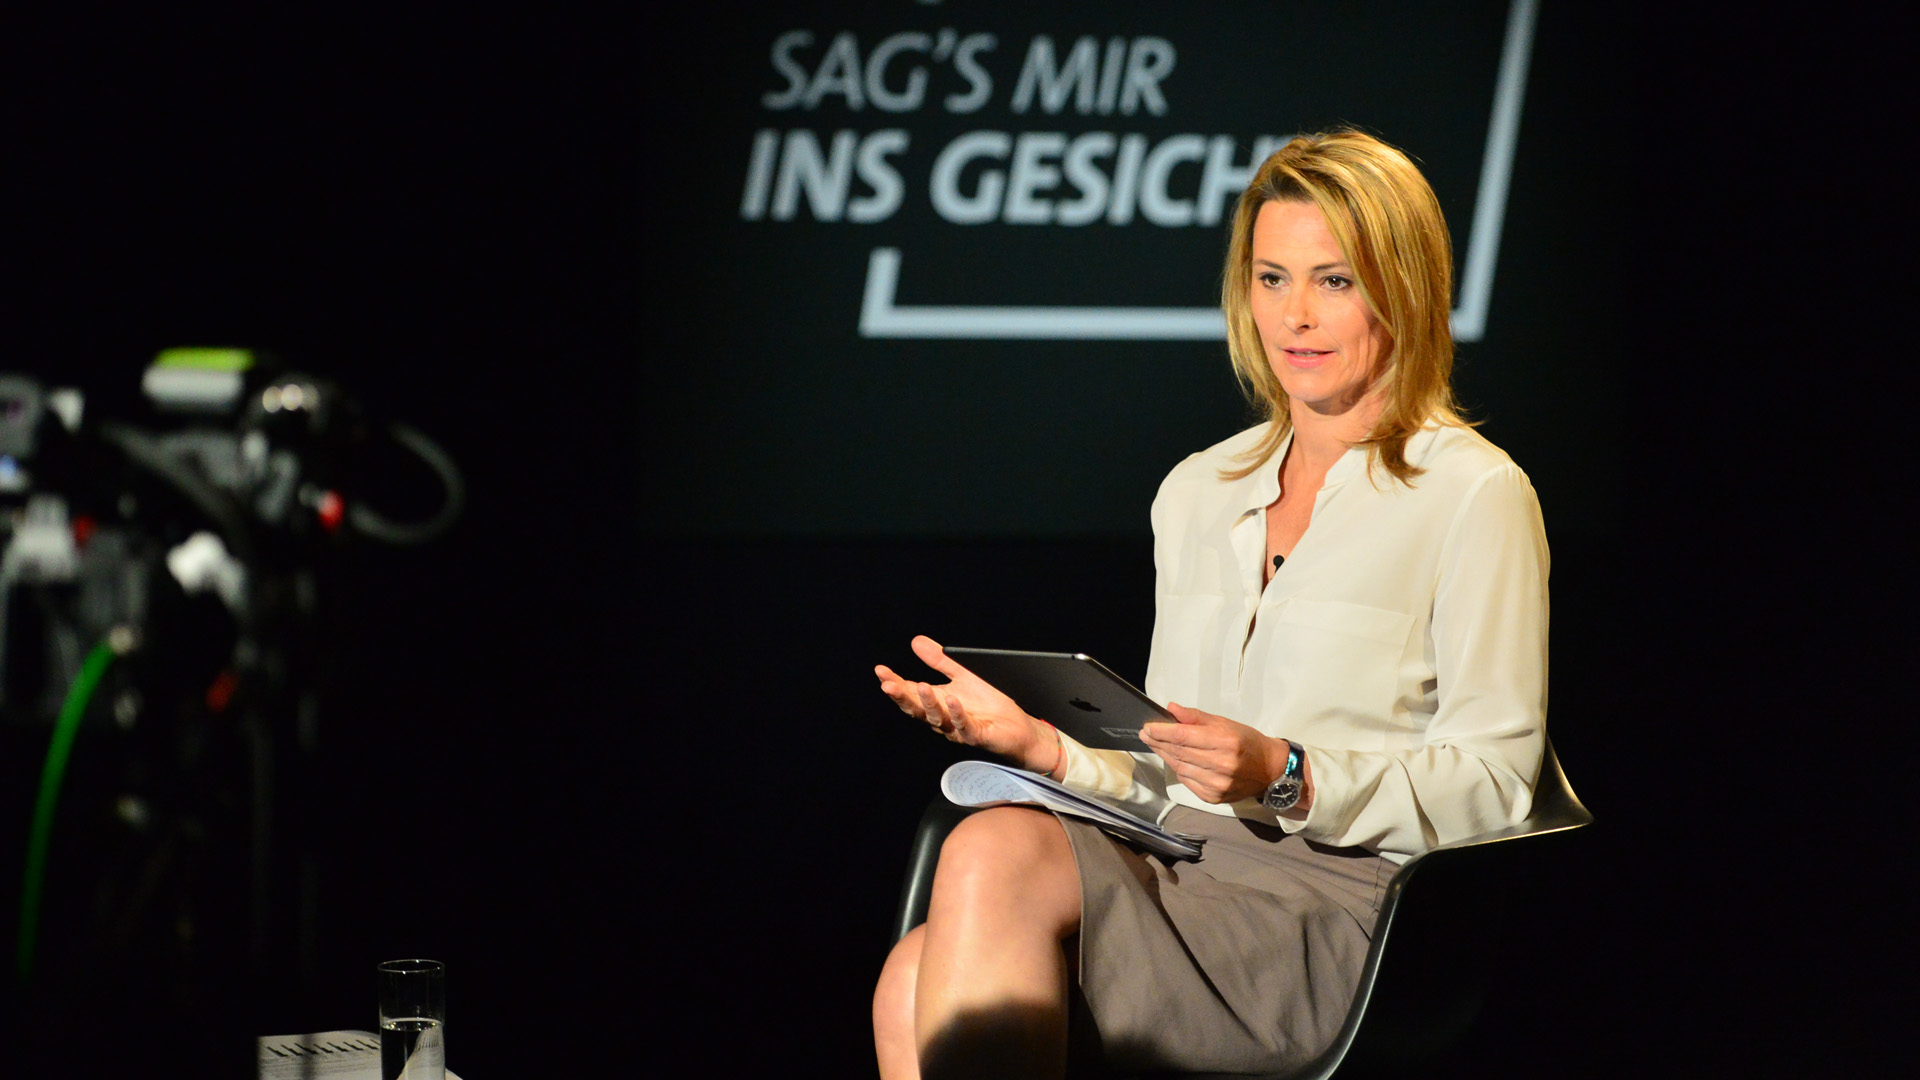 Anja Reschke bei "Sag's mir ins Gesicht" (Foto: Wulf Rohwedder)